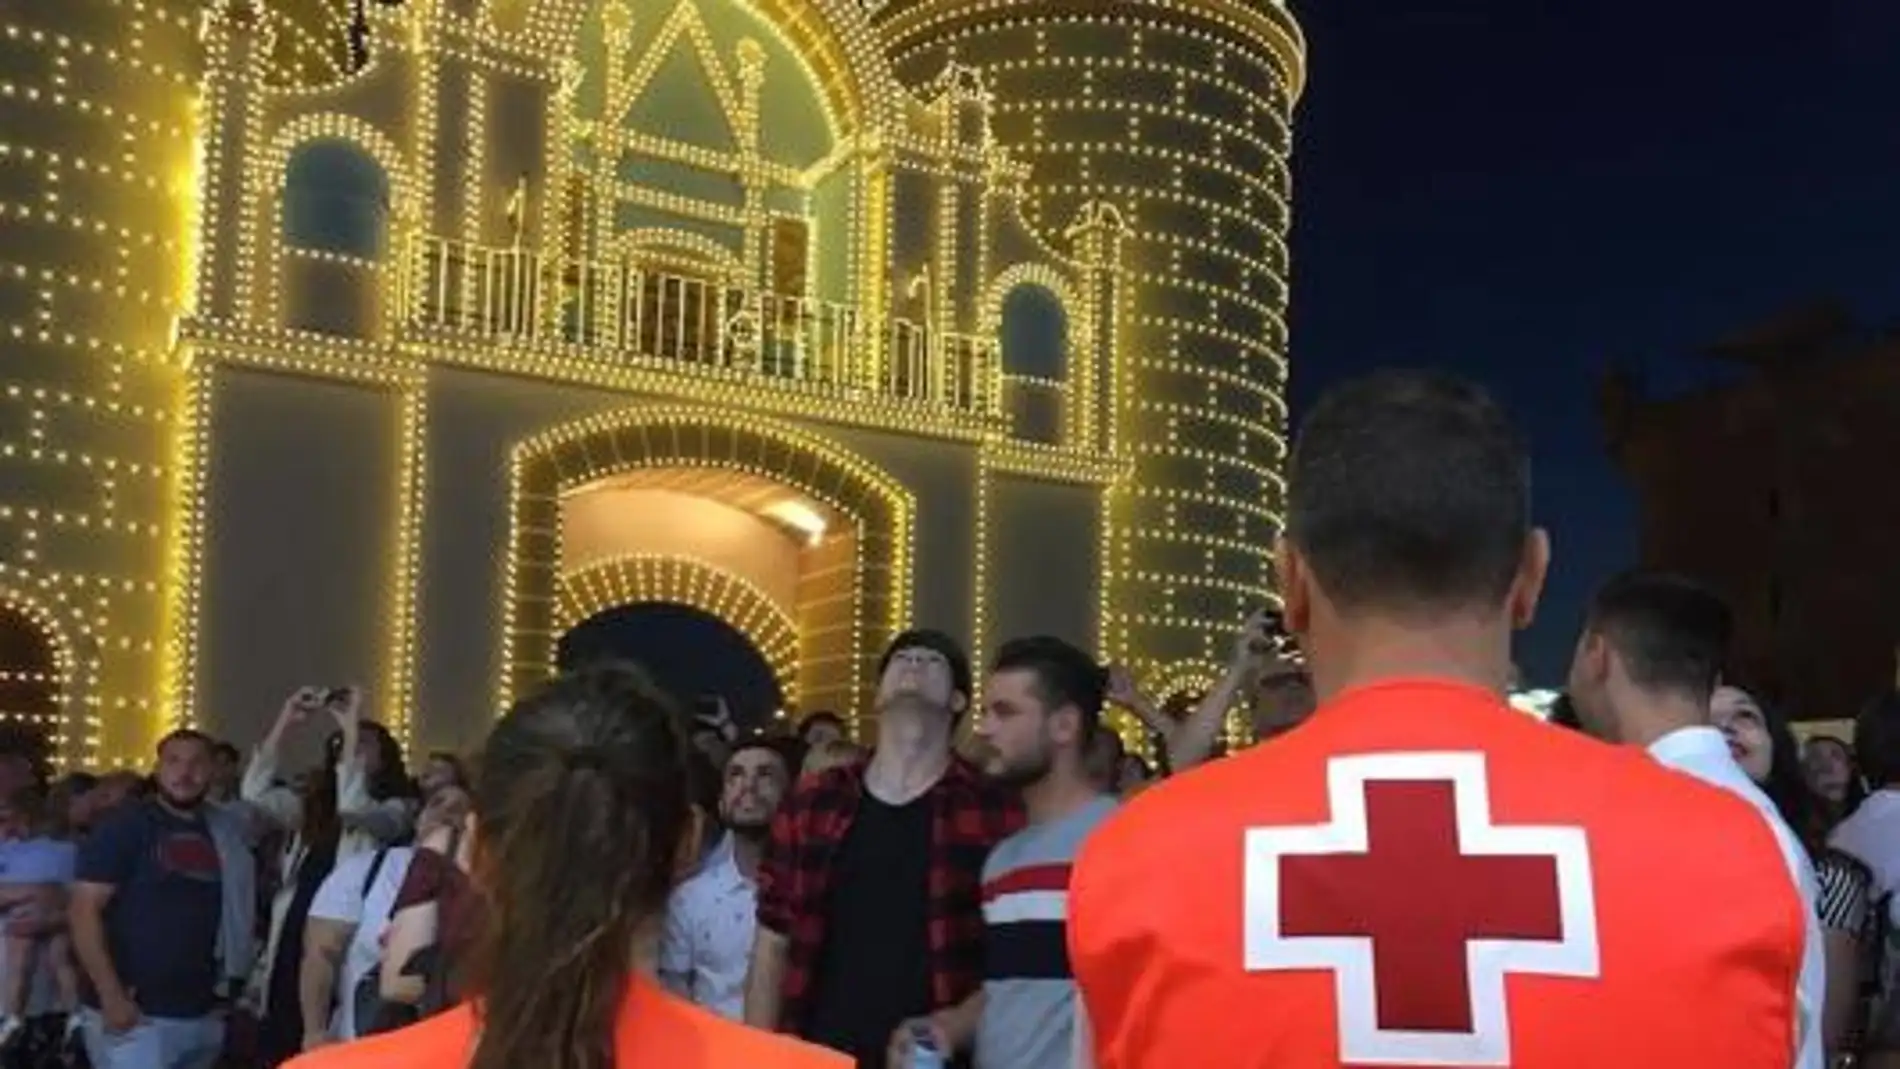 Cruz Roja atiende a diez personas en la noche de San Juan de la Feria de Badajoz